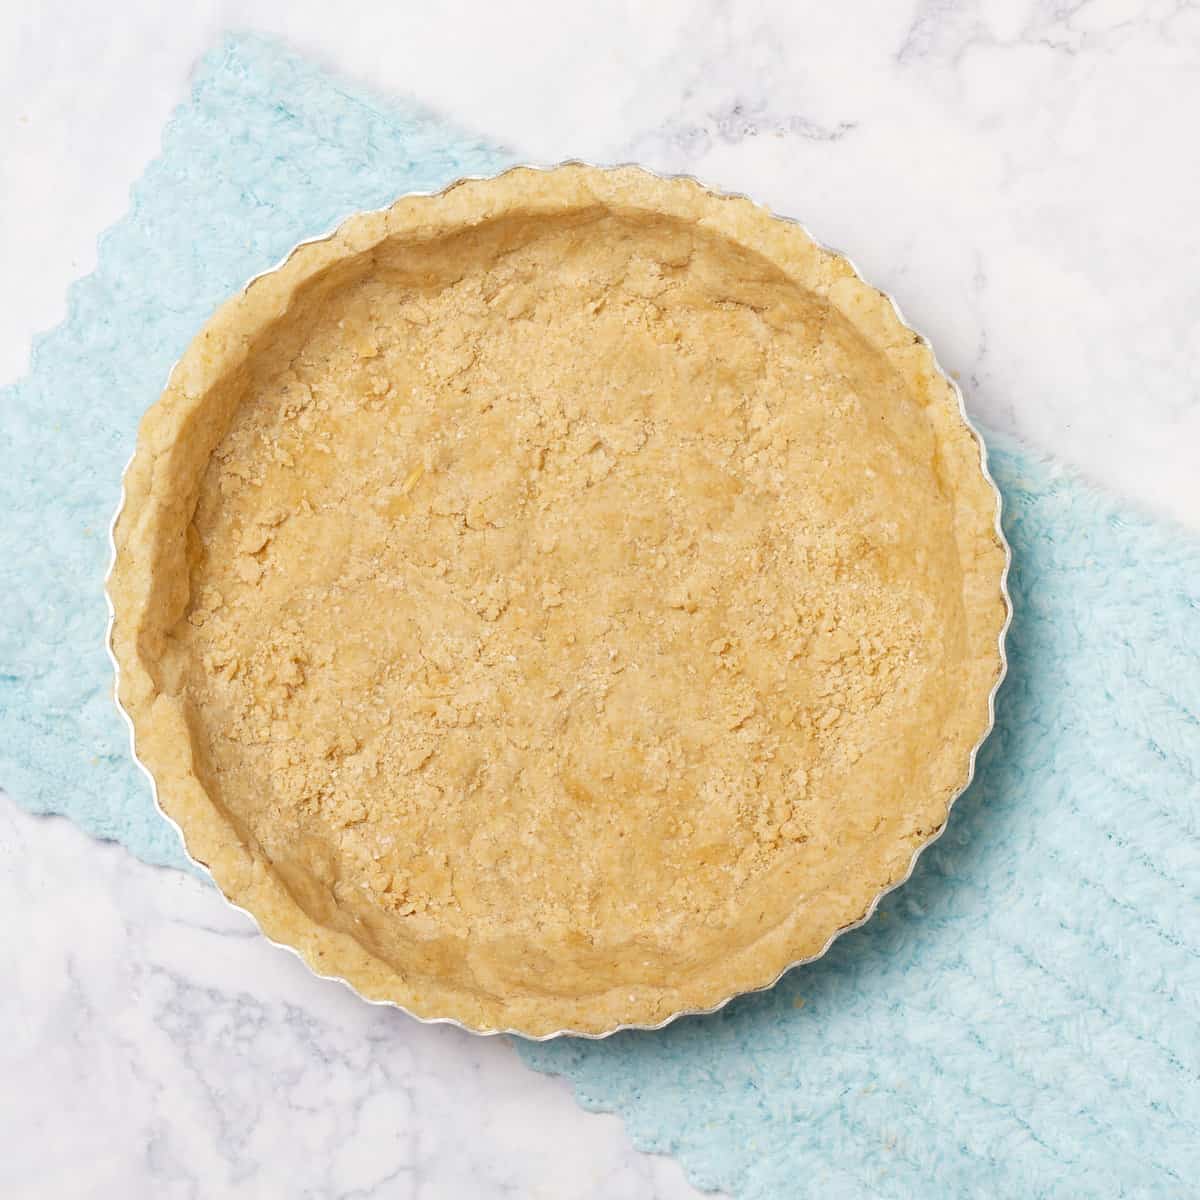 Par-baked apple pie crust. 